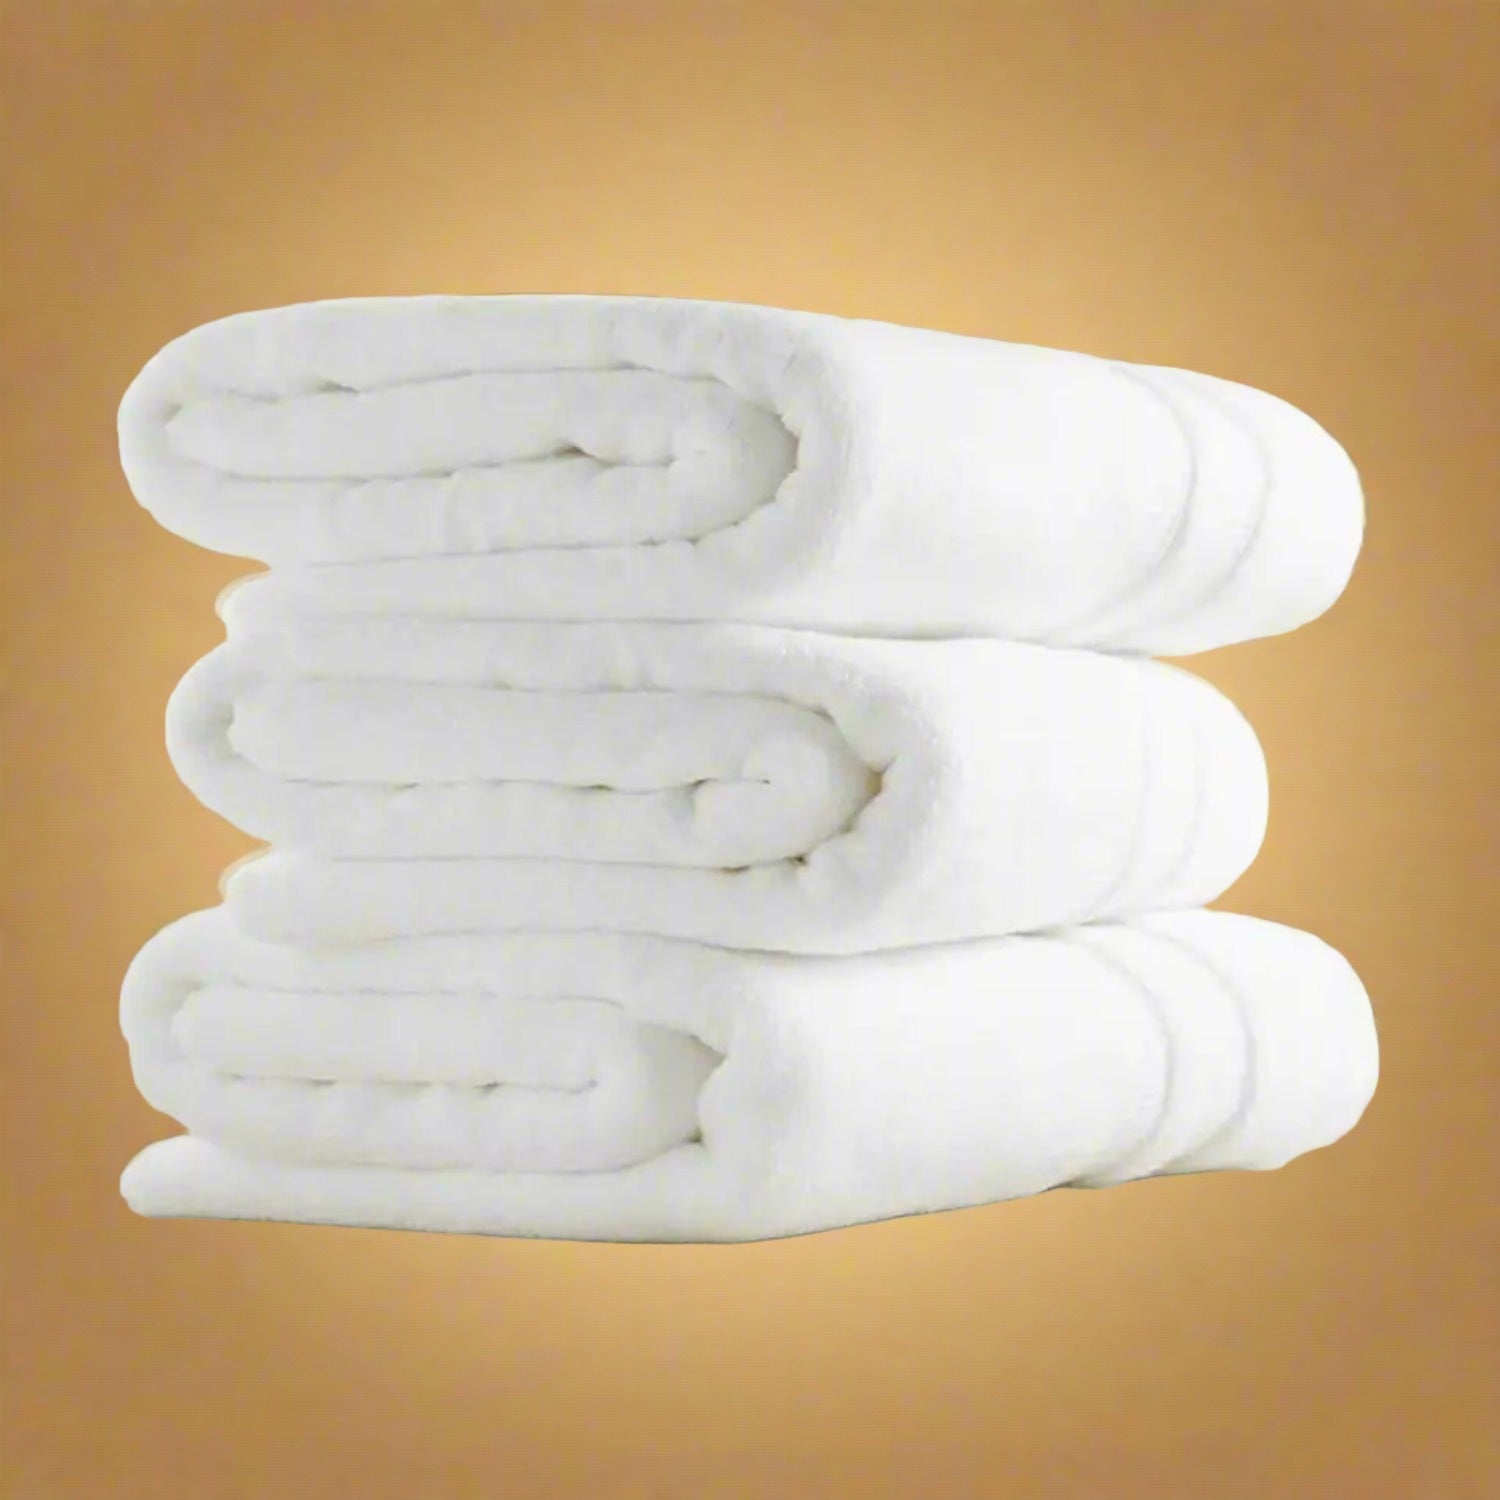 Cotton Bath Towel Pack of 6 - White - beddingbag.com